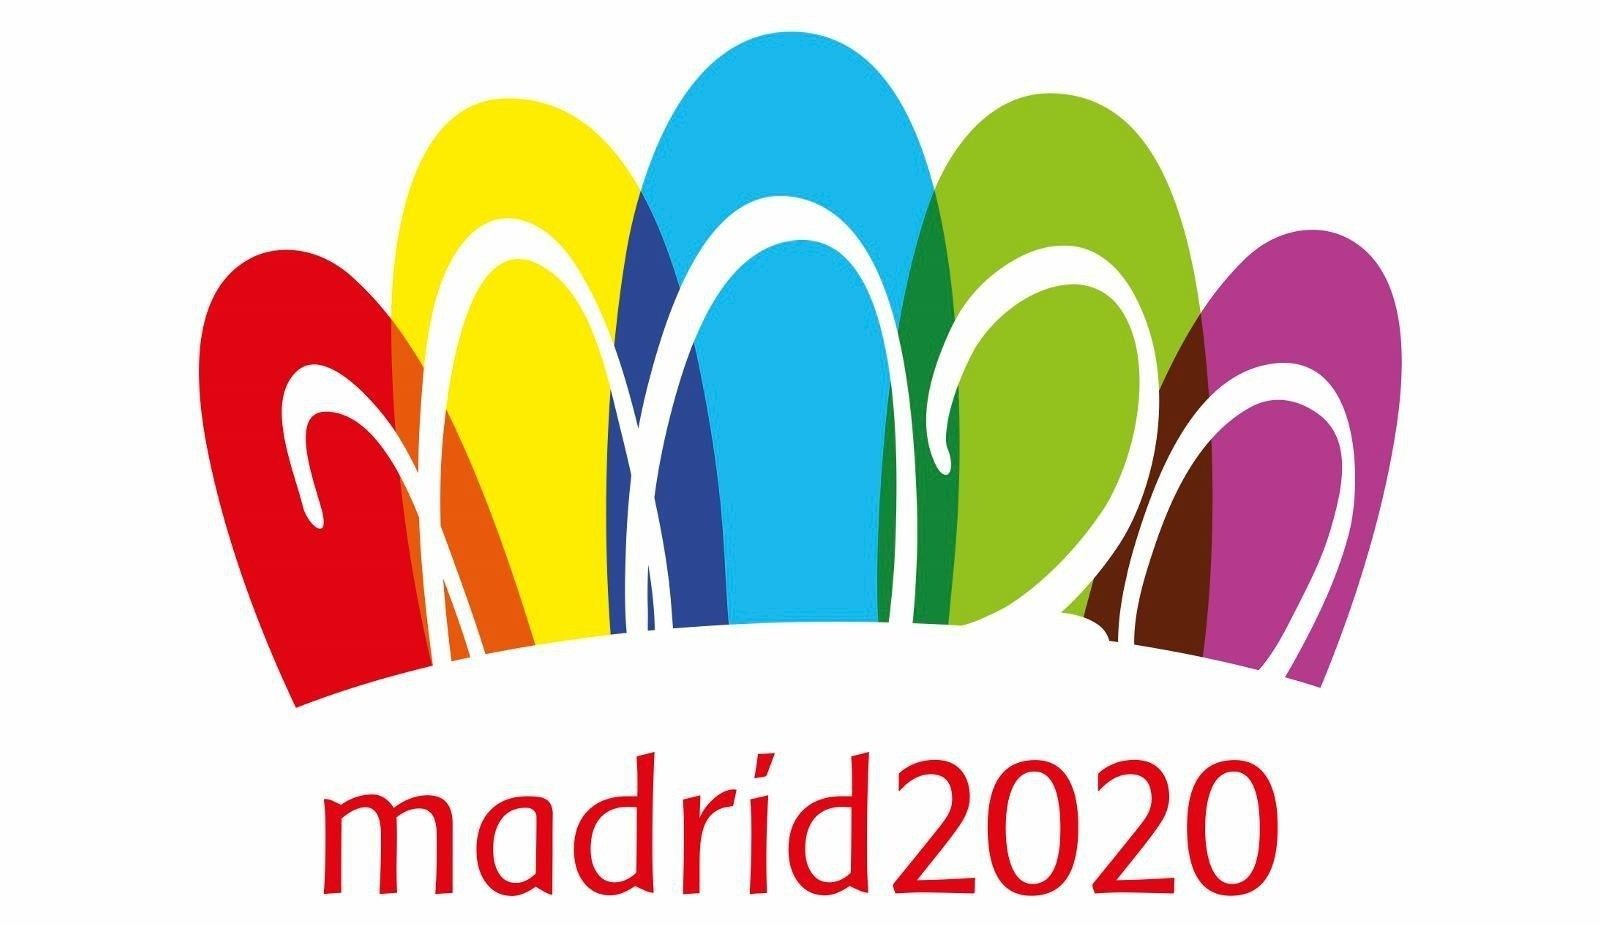 madrid 2020